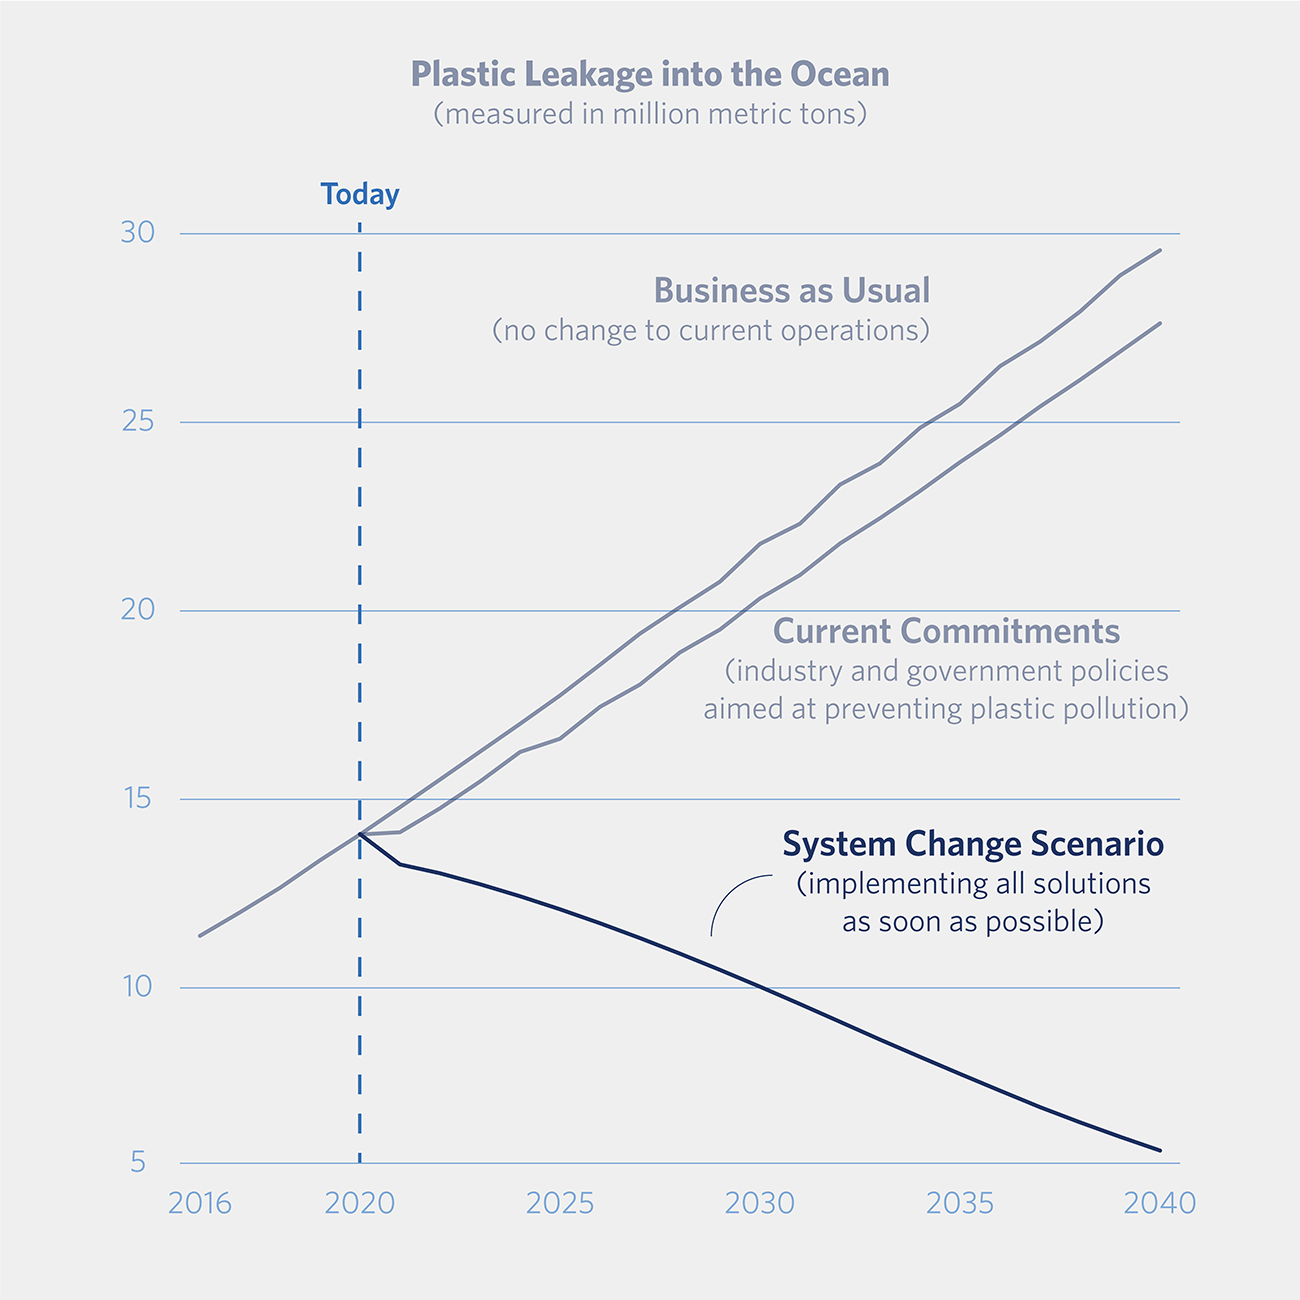 Plastic consumption scenarios to 2040